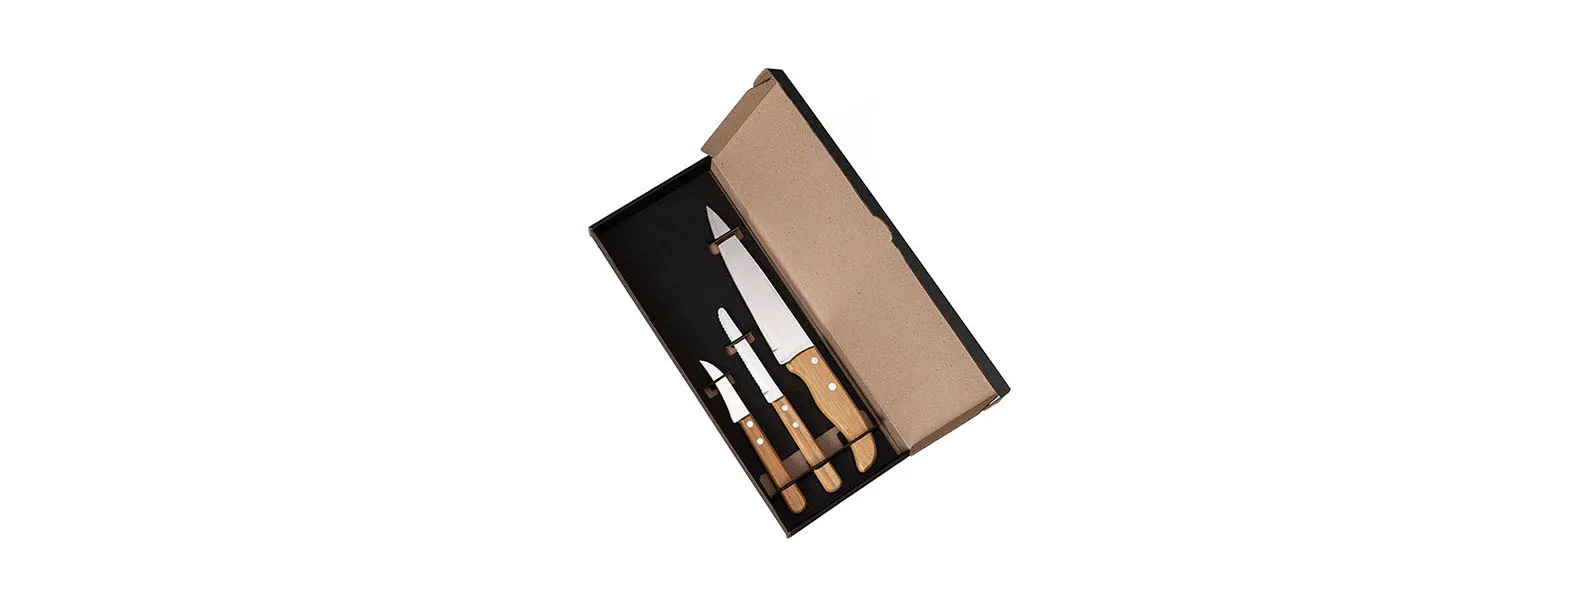 Conjunto de Facas em Bambu/Aço Inox; Acompanha faca 7'', faca 4 para frutas e faca 3 para legumes em Bambu/Inox. Como cortesia, na faca 7 fazemos uma gravação com os cortes do boi.